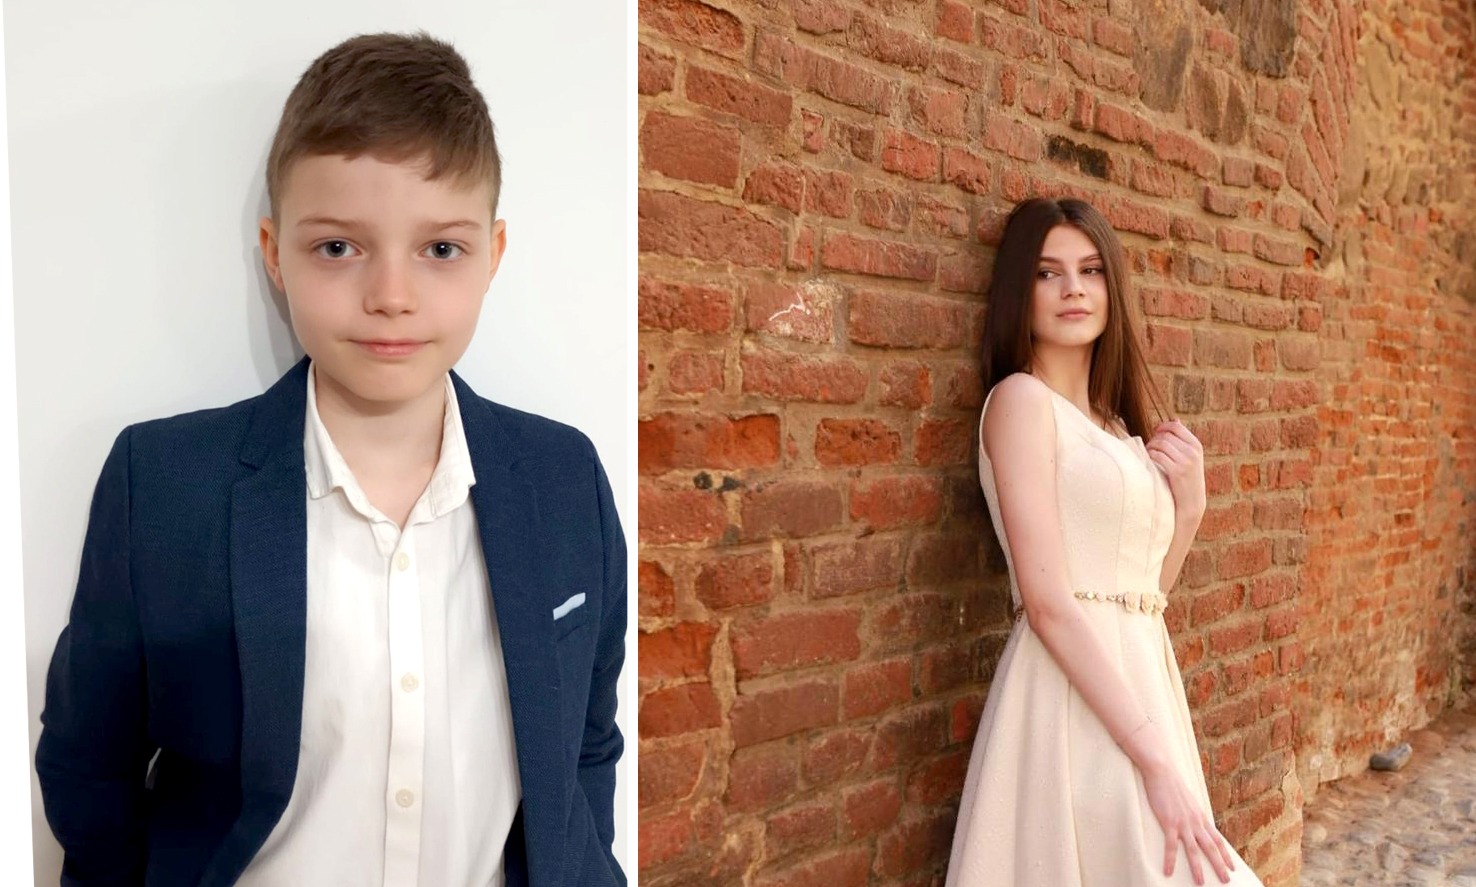 Petra și Vlad, doi dintre copiii talentați ai Școlii Populare de Arte din Sibiu: „Vreau să muncesc mult pentru a putea încânta oamenii cu cântecele mele”